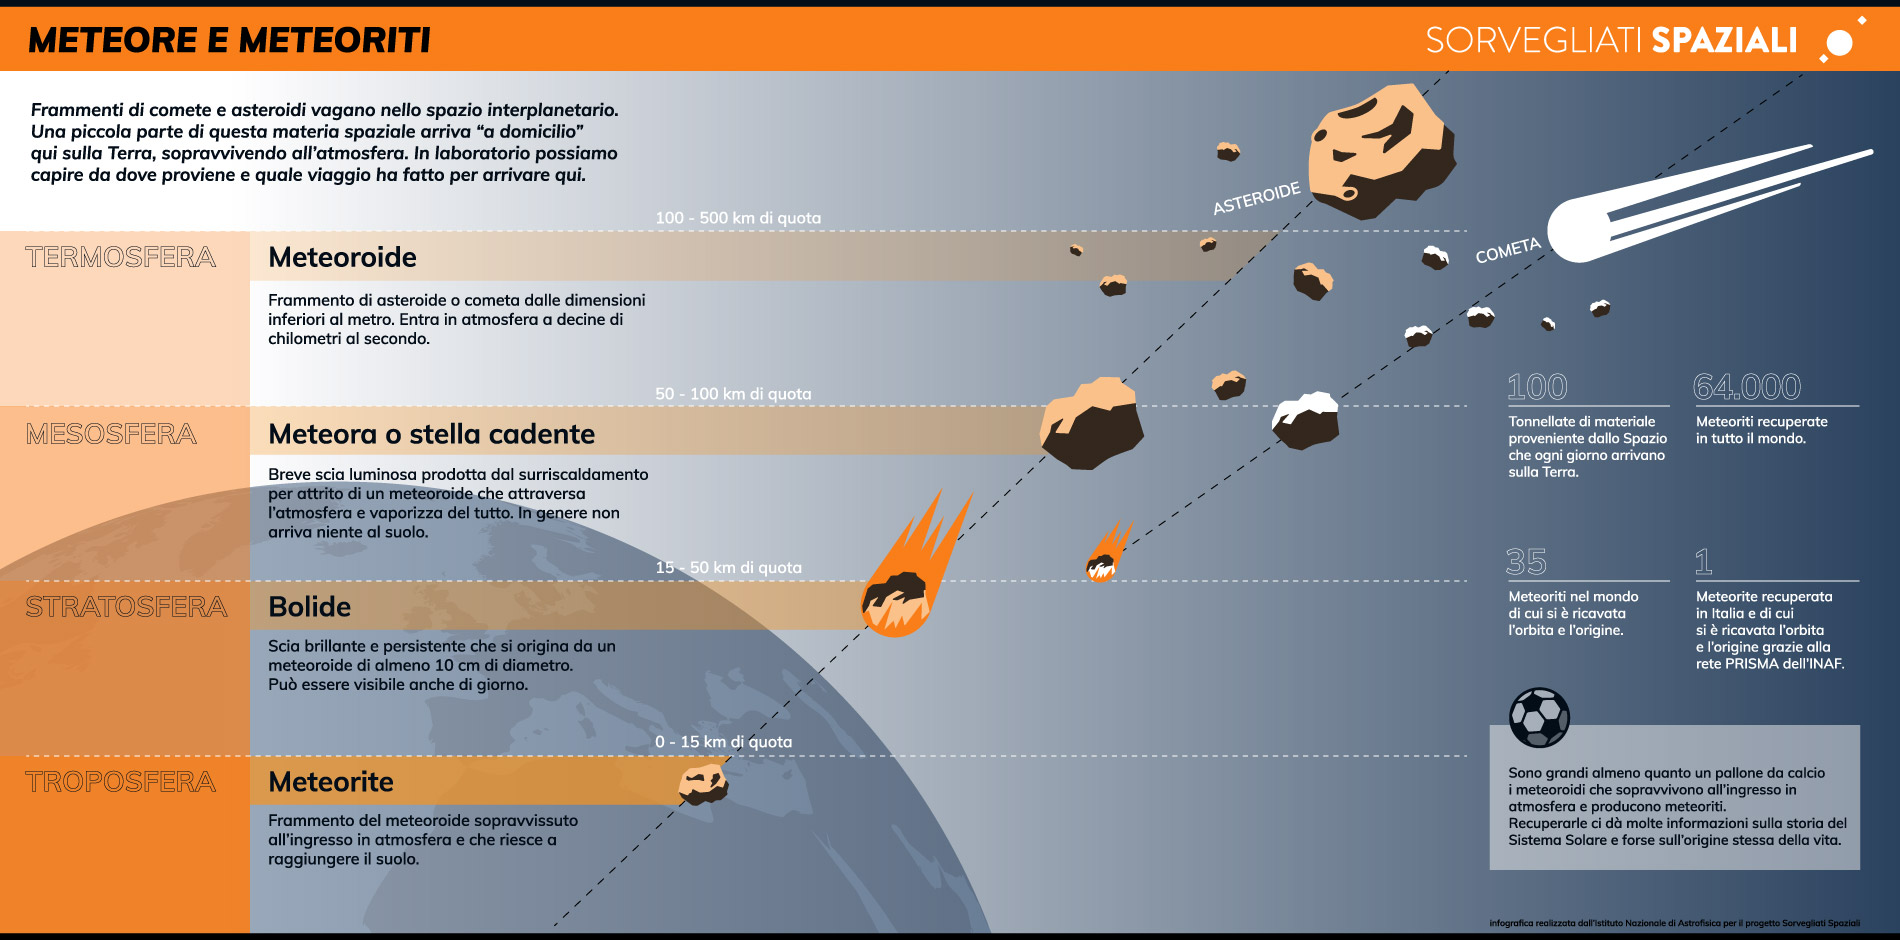 Infografica meteore e meteoriti